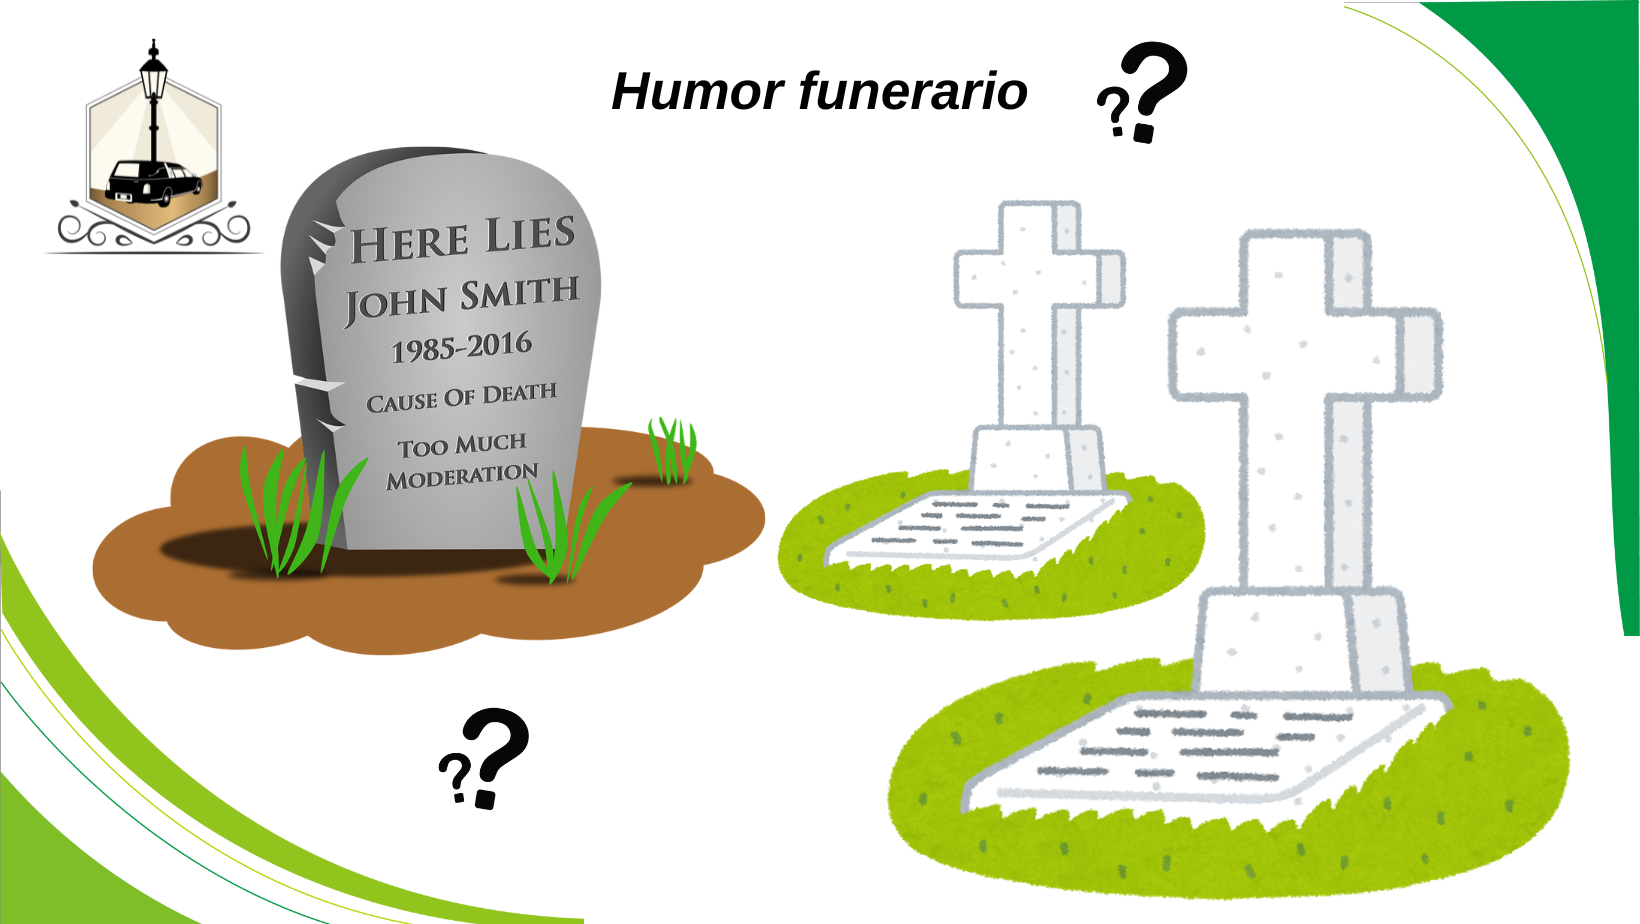 Humor funerario